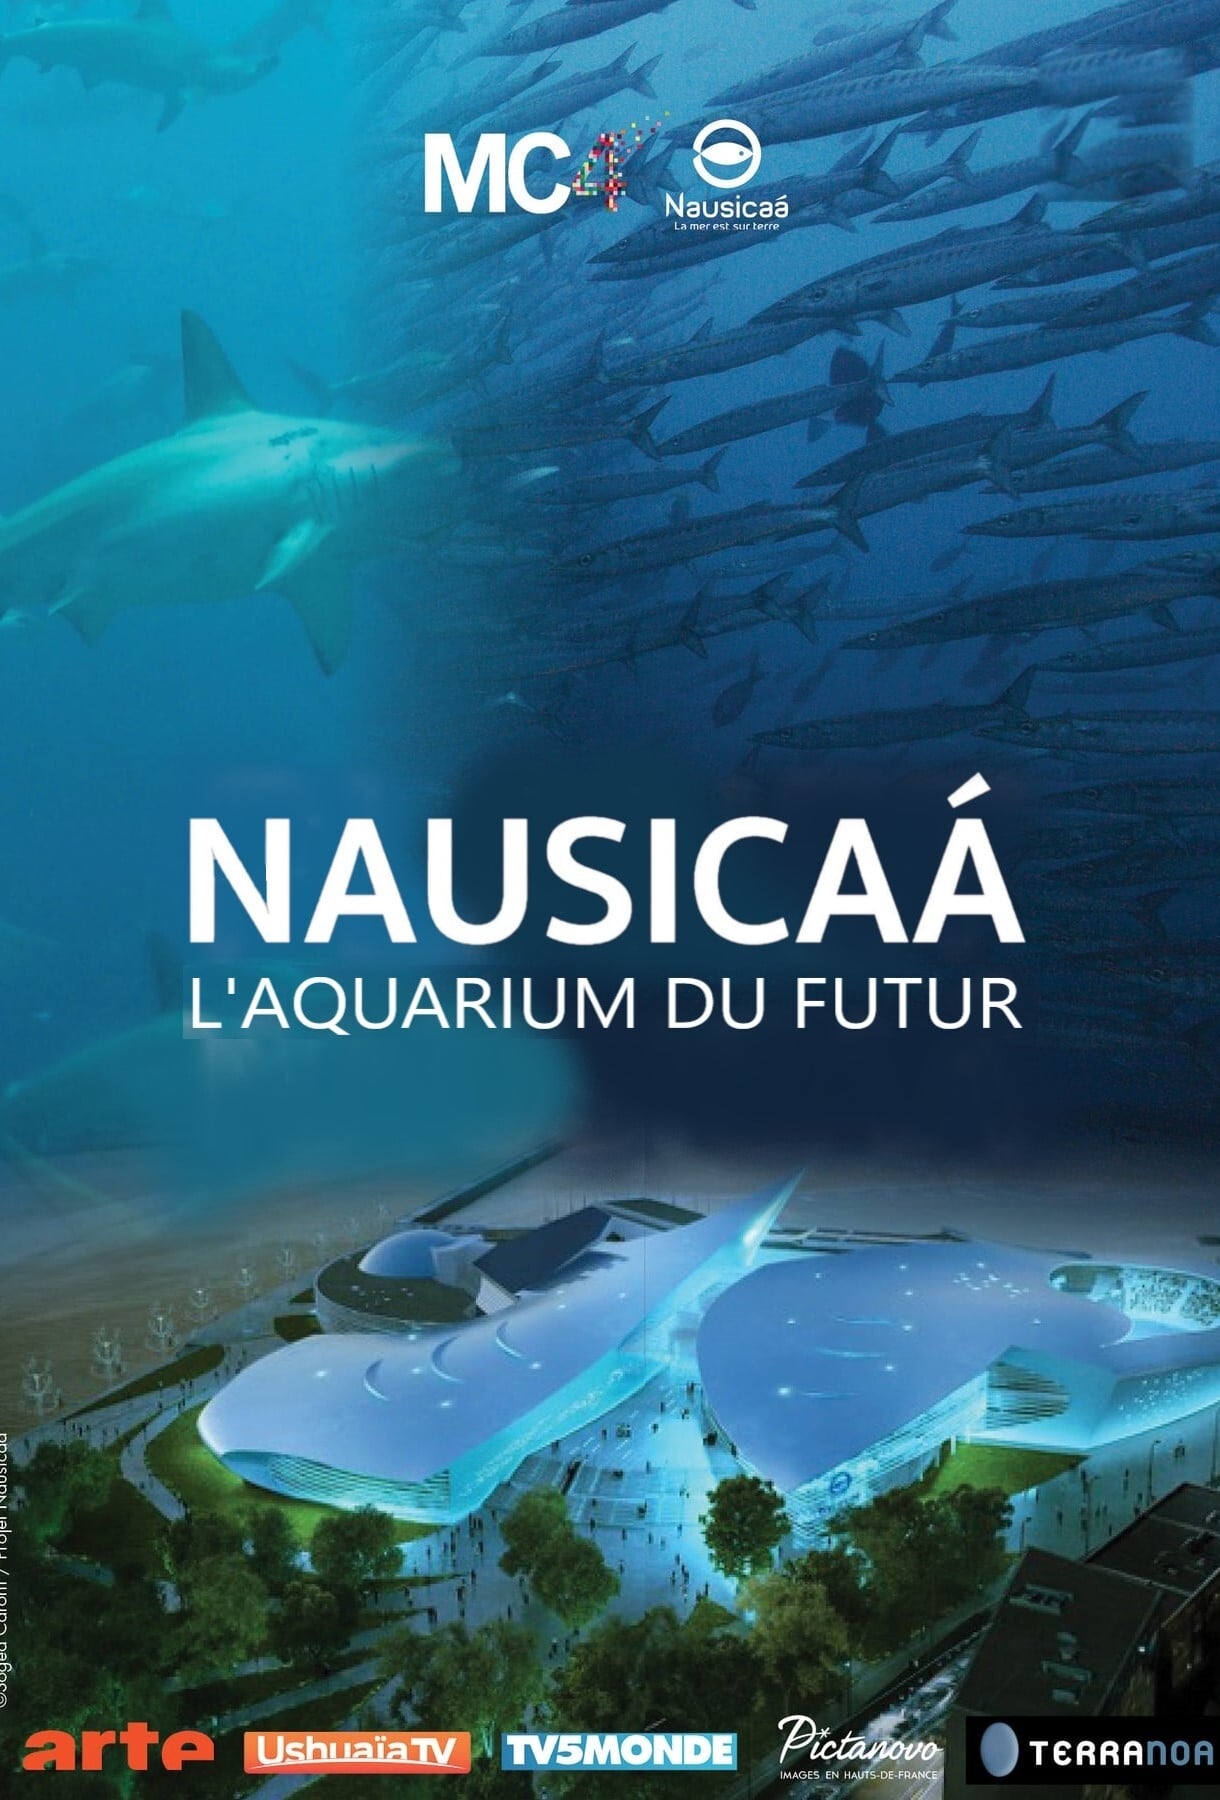 Nausicaa - Ocean Biodiversity On Stage